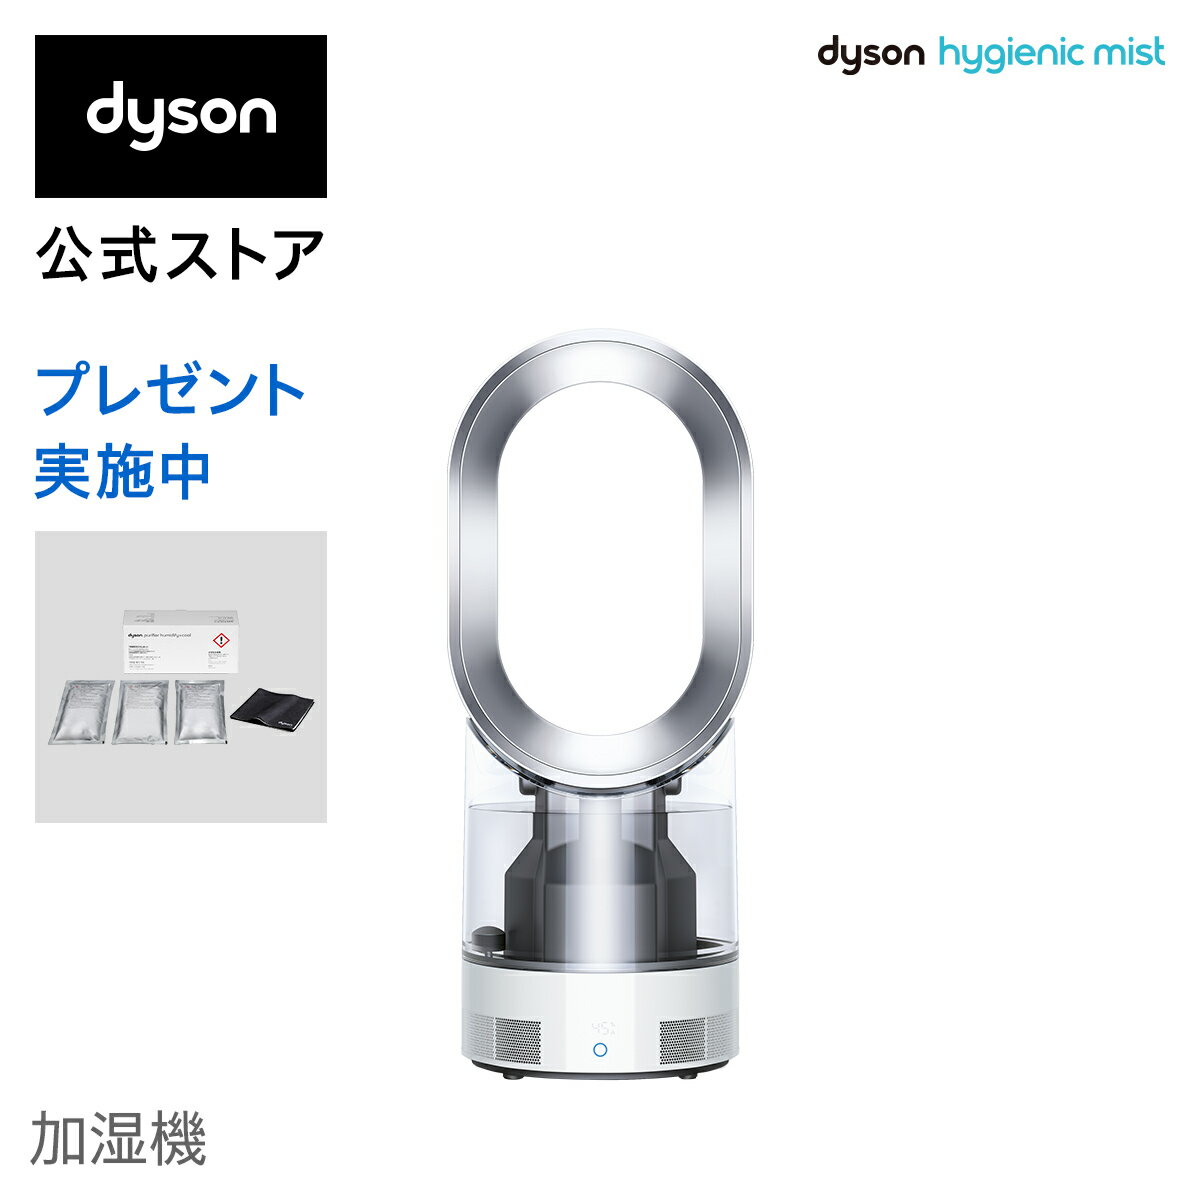 【直販限定 加湿お手入れキット付】ダイソン Dyson Hygienic Mist MF01 WS 加湿器 ホワイト/シルバー